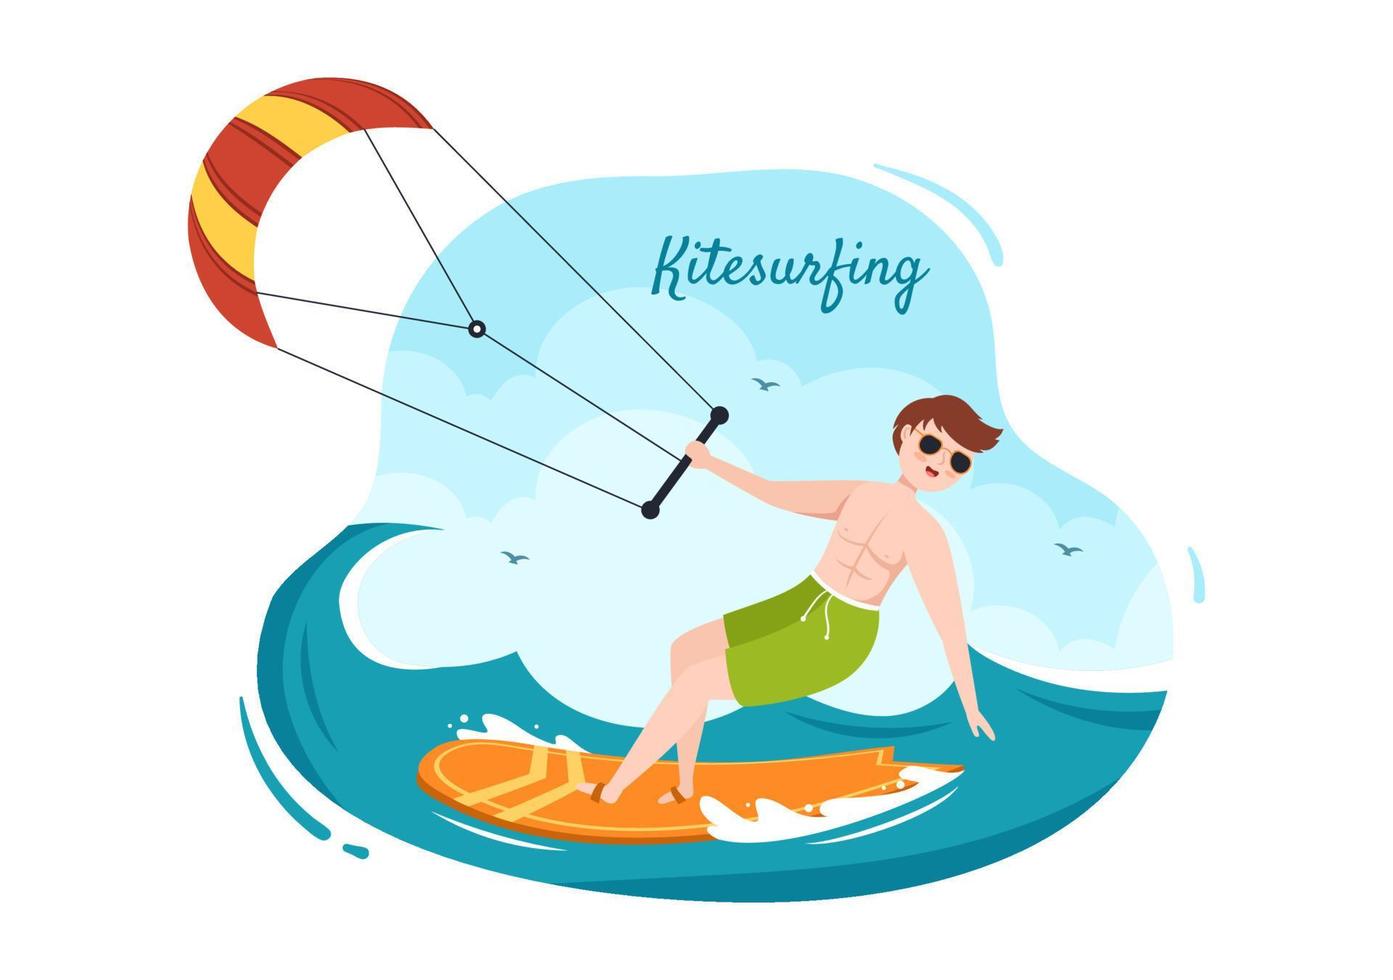 zomer kitesurfen van watersportactiviteiten cartoon afbeelding met een grote vlieger op een bord in vlakke stijl vector